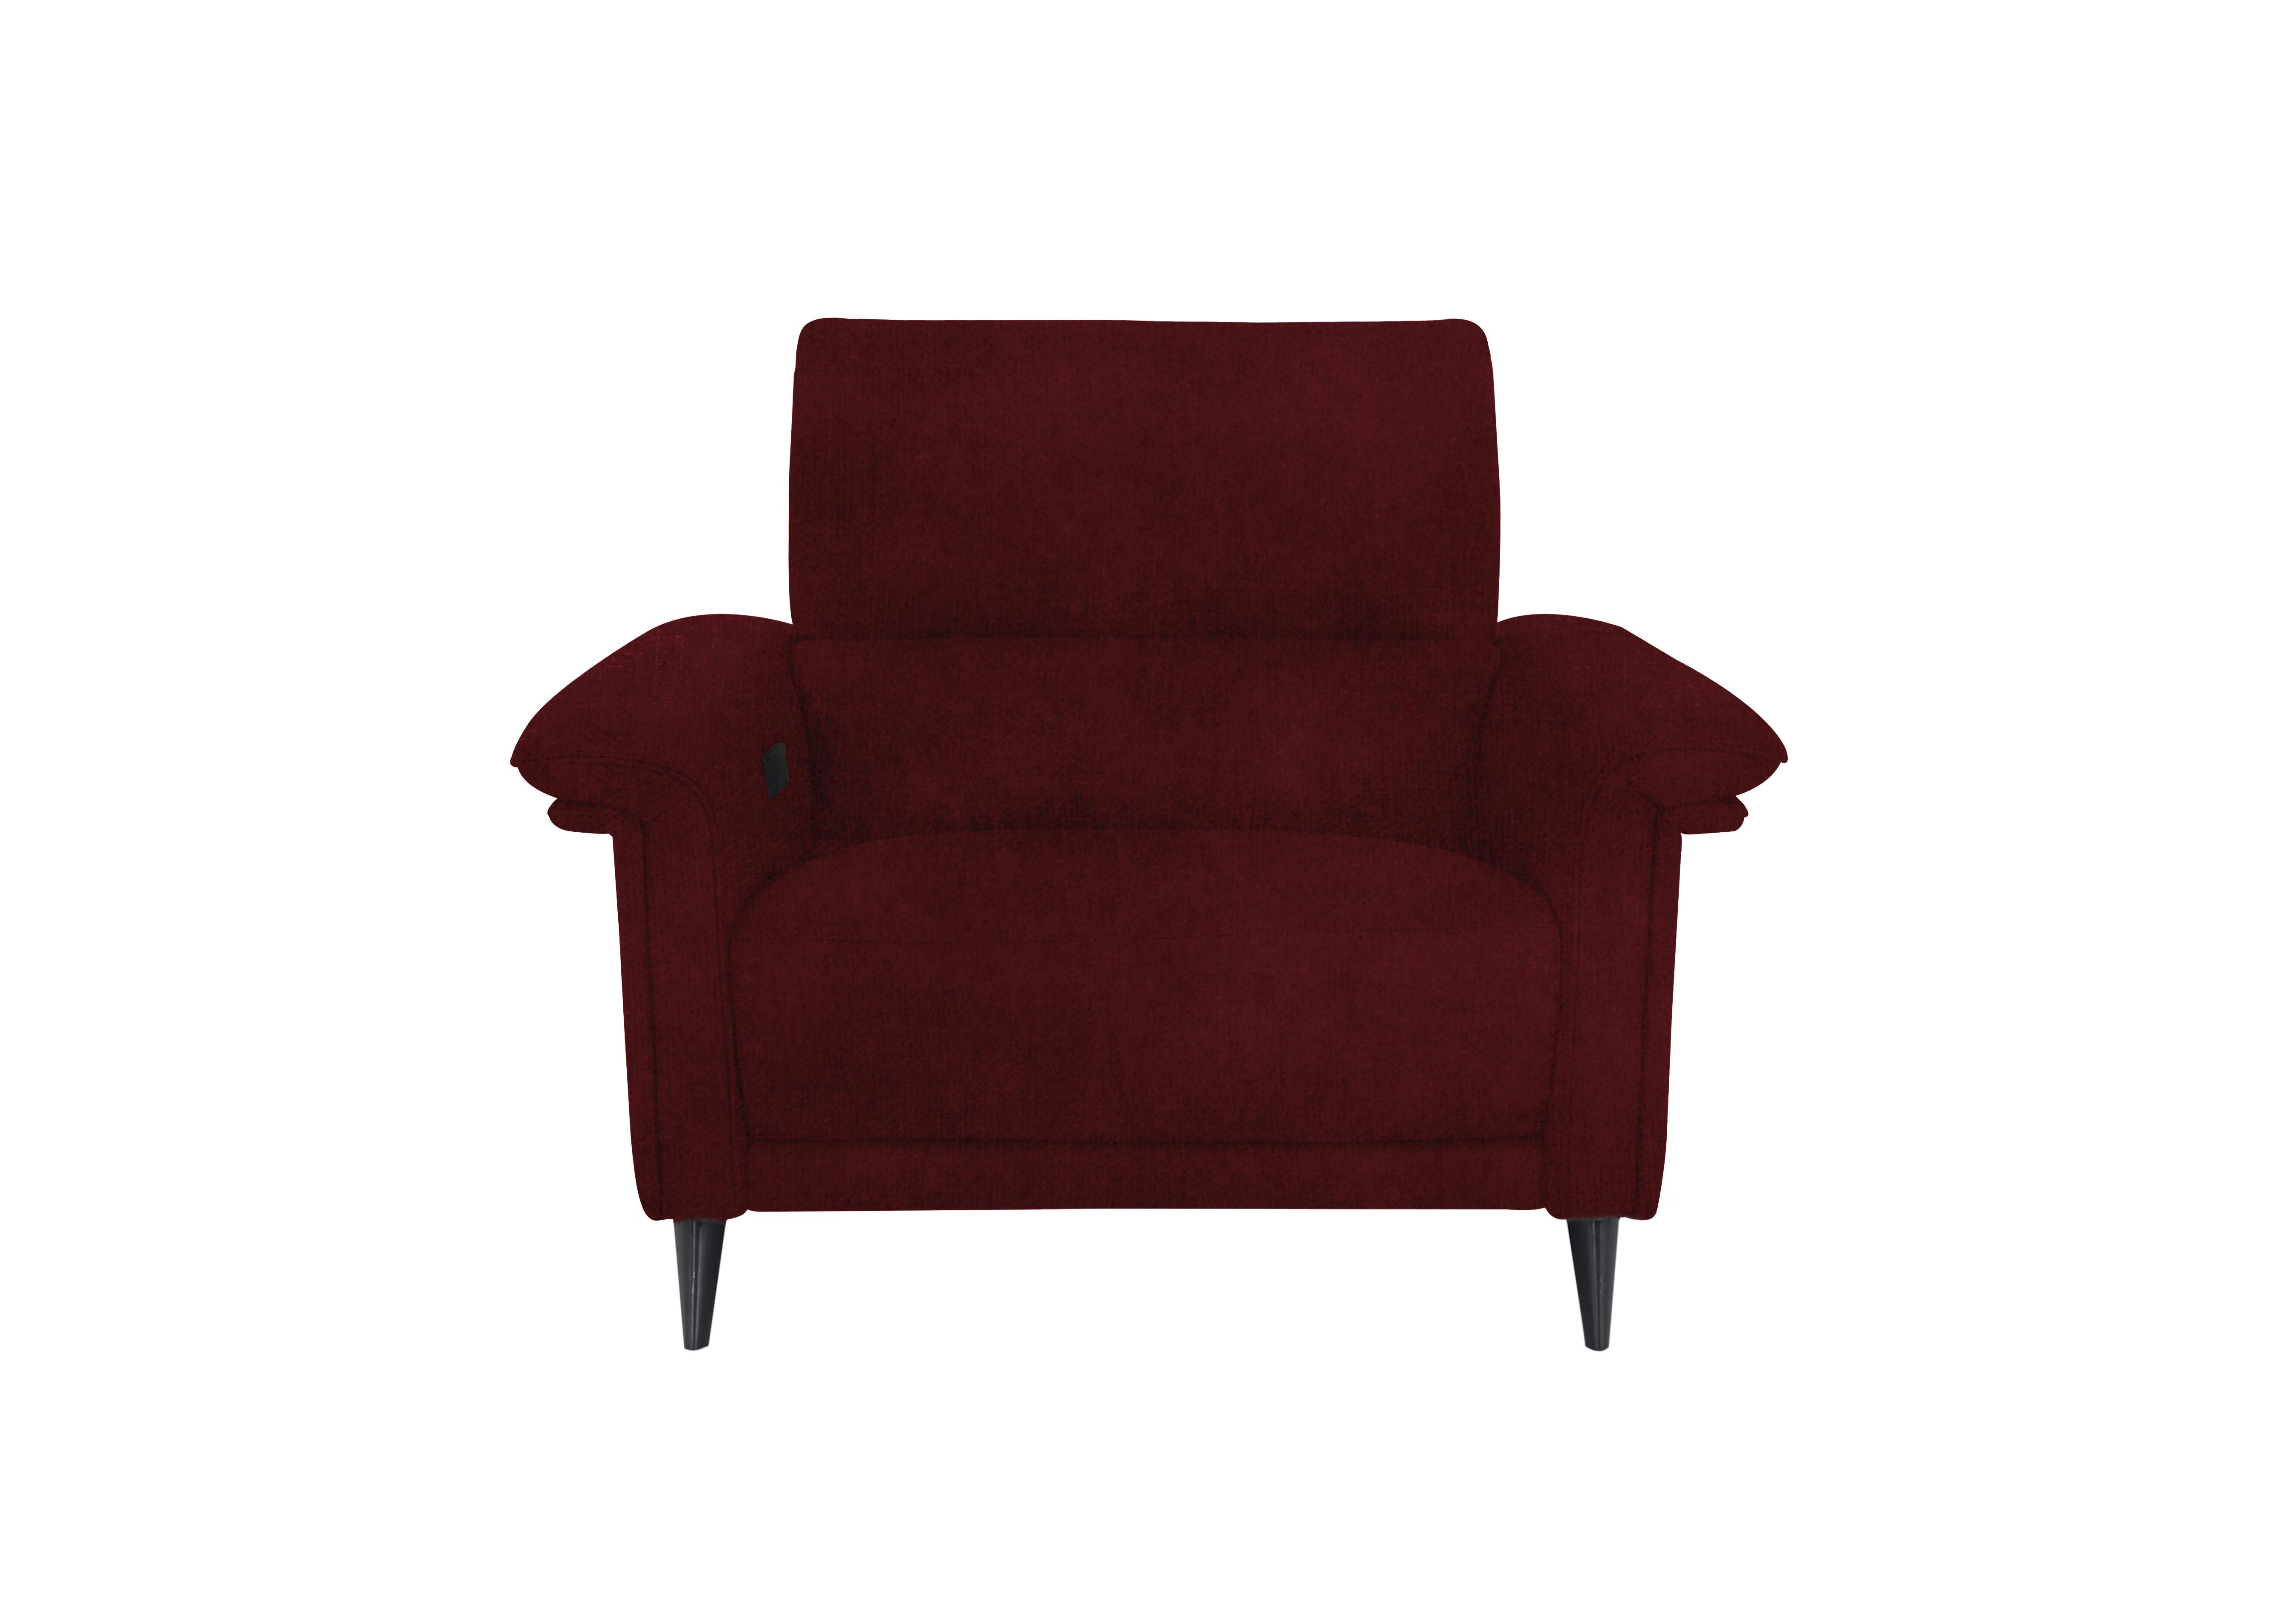 Huxley Fabric Chair in Fab-Meg-R65 Burgundy on Furniture Village